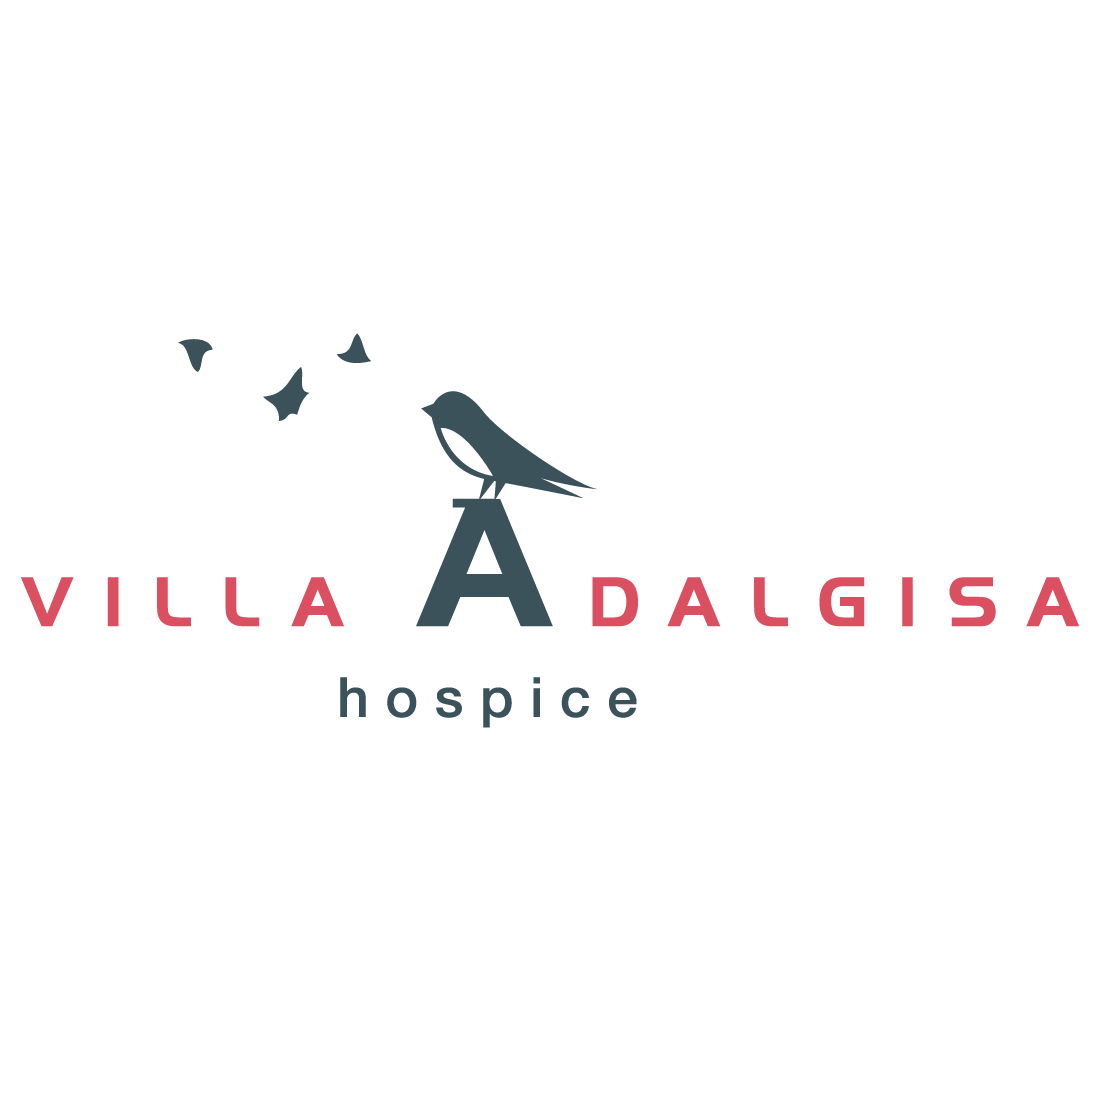 villa adalgisa logo_Tavola disegno 1